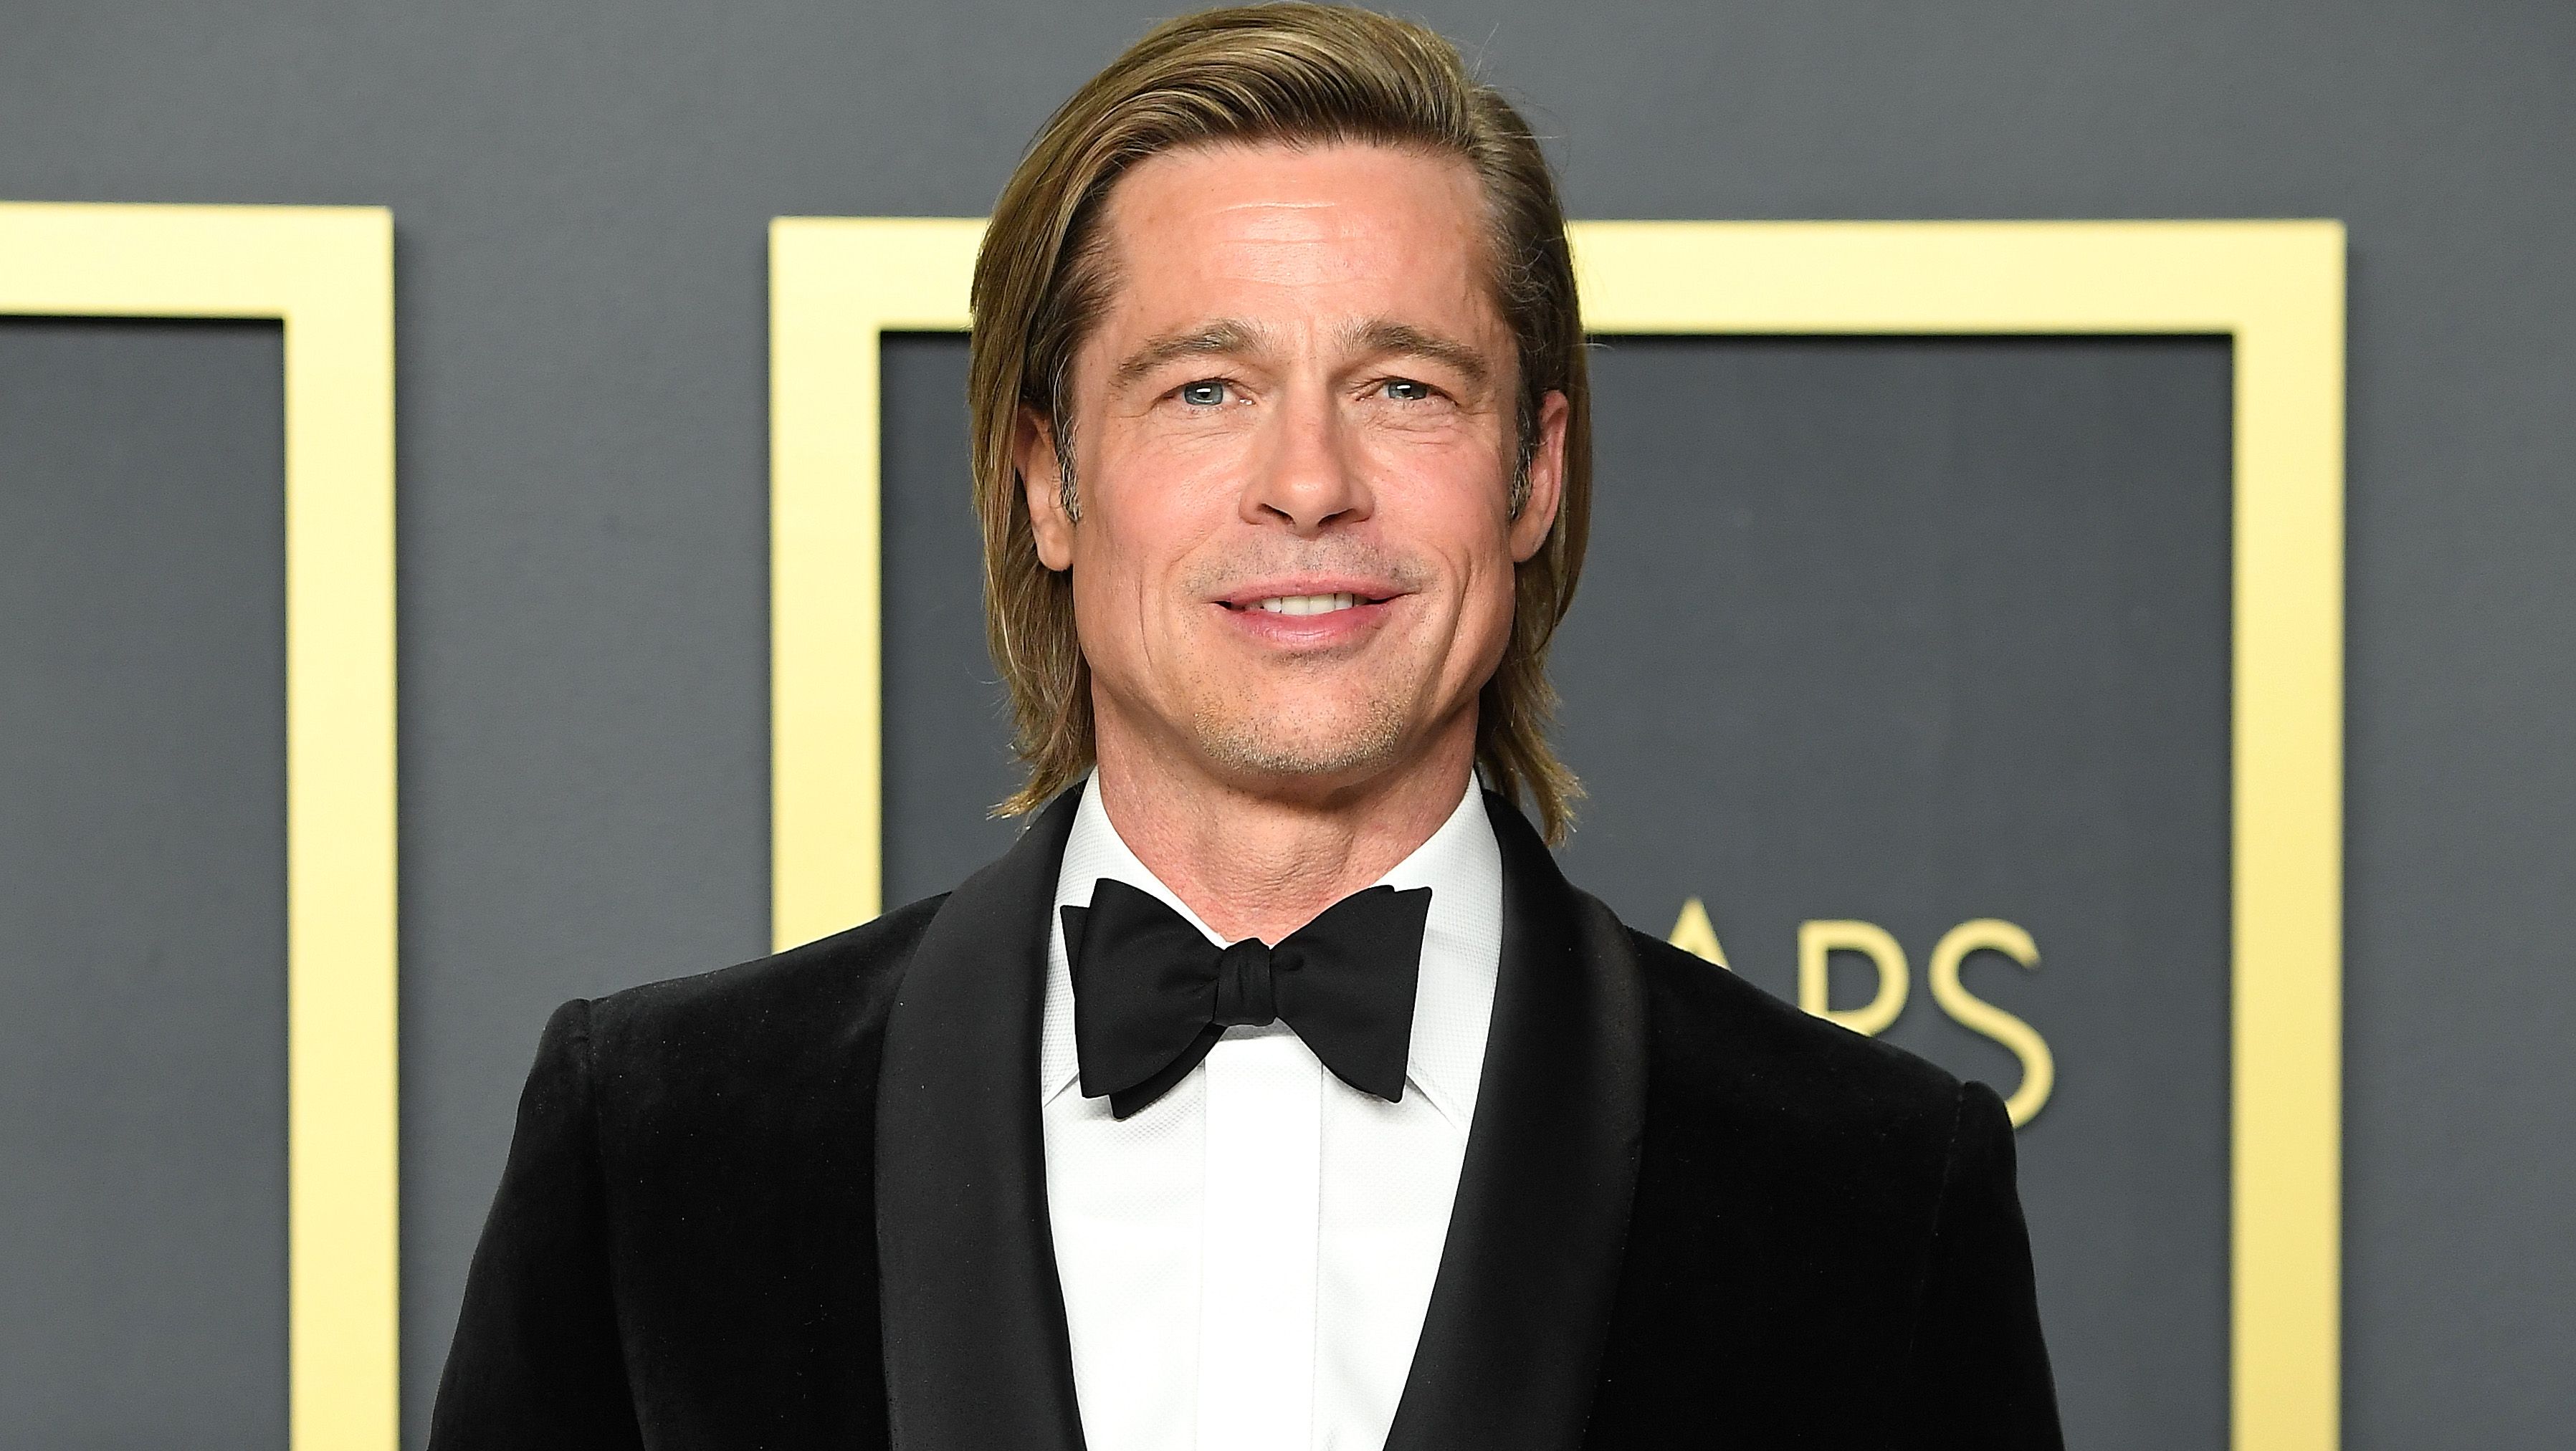 Brad Pitt sports a new short haircut at Golden Globes 2023